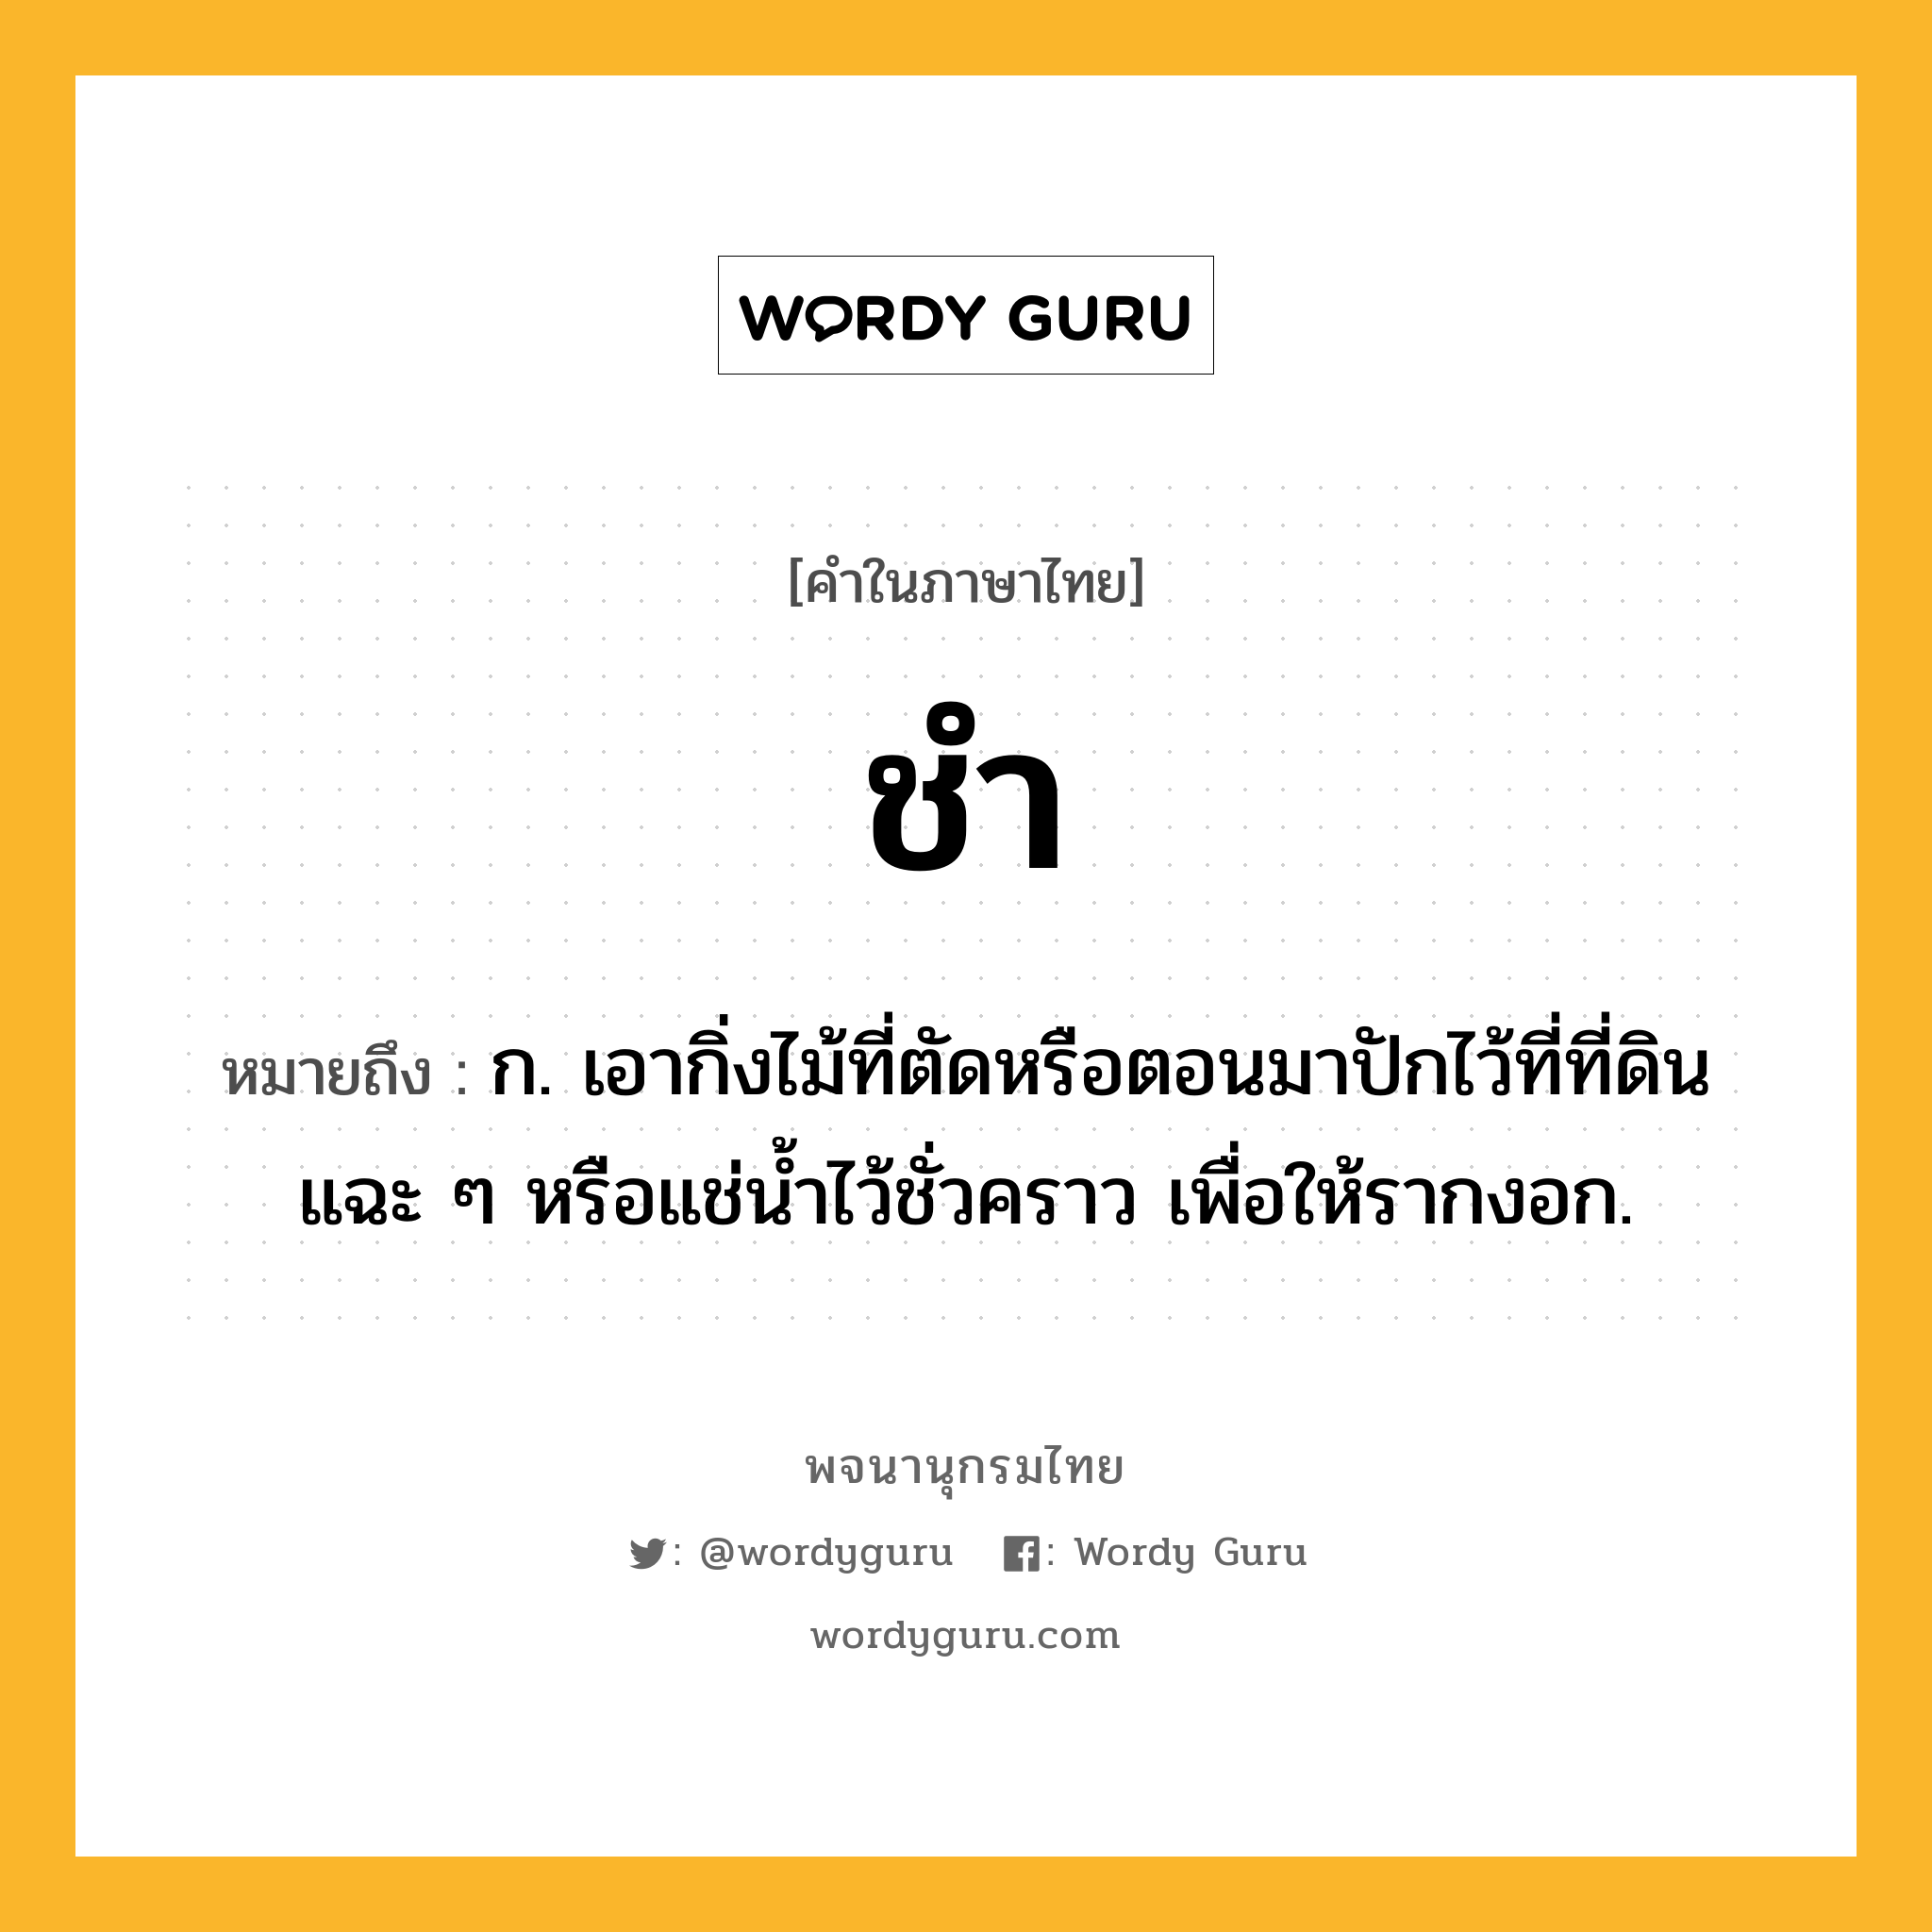 ชำ ความหมาย หมายถึงอะไร?, คำในภาษาไทย ชำ หมายถึง ก. เอากิ่งไม้ที่ตัดหรือตอนมาปักไว้ที่ที่ดินแฉะ ๆ หรือแช่นํ้าไว้ชั่วคราว เพื่อให้รากงอก.